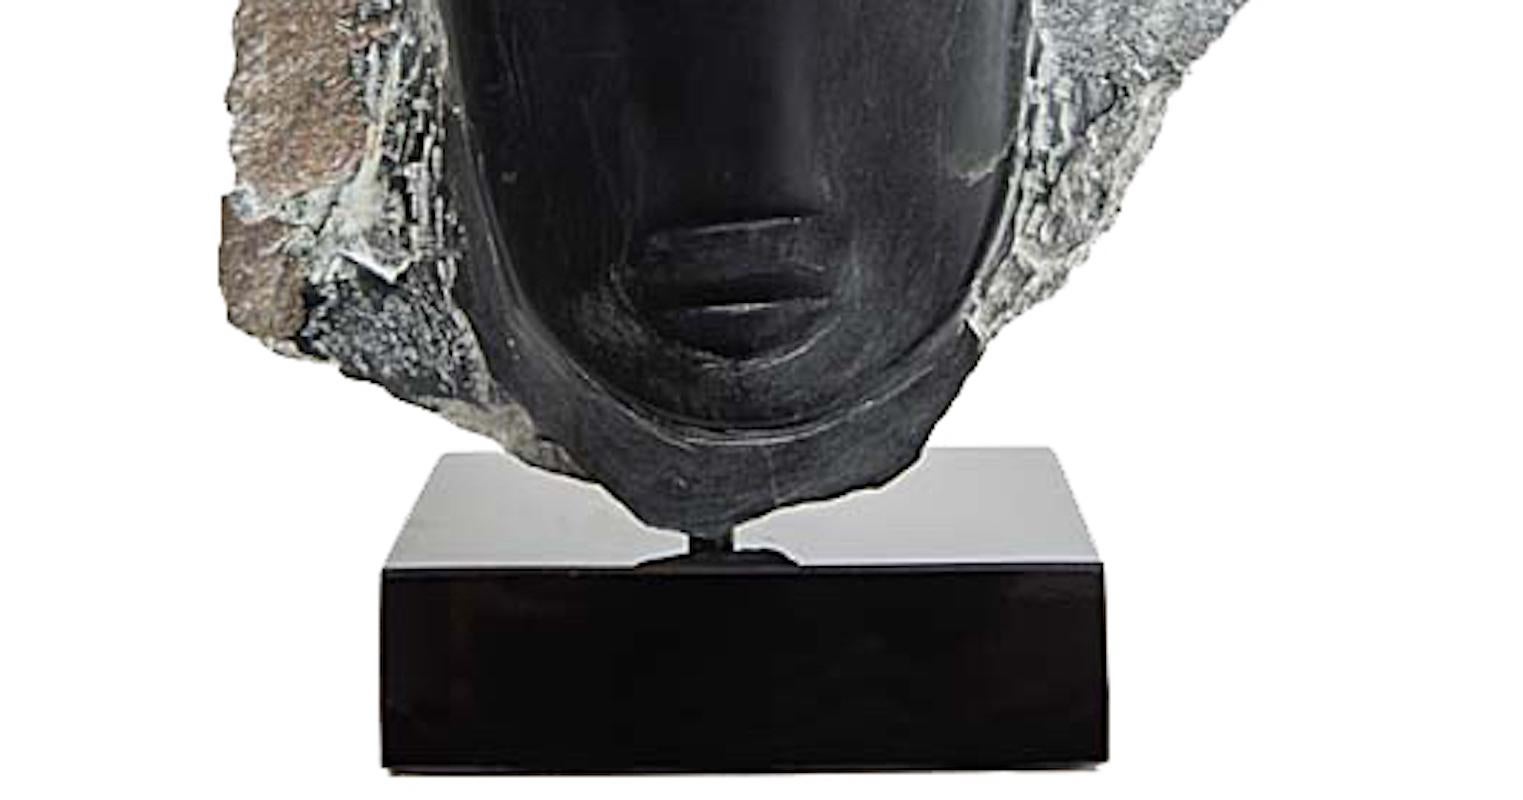 American Wendy Hendelman Black Alabaster Head Sculpture, 2019 For Sale